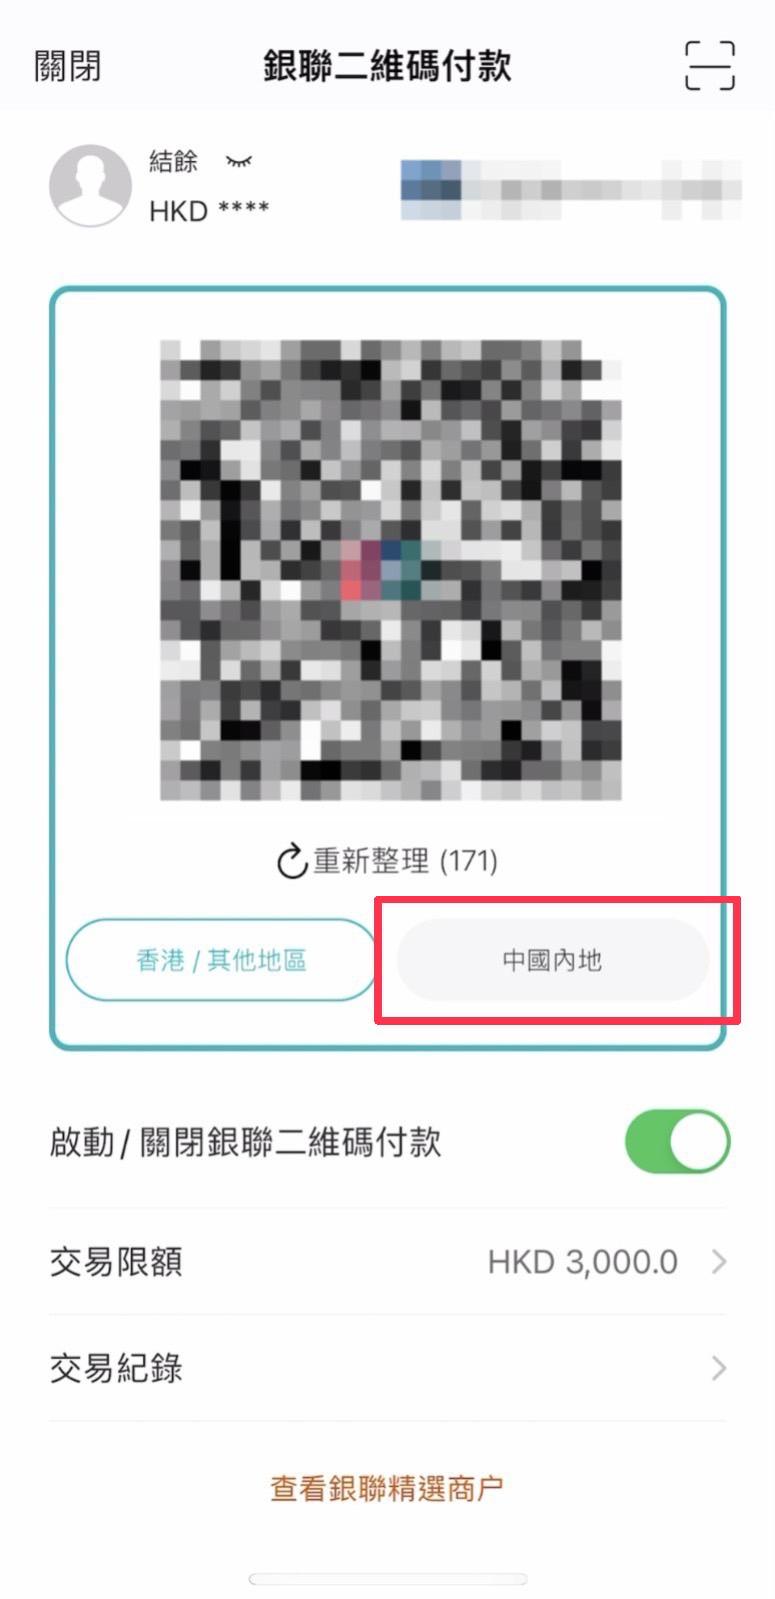 8. 手機畫面將出現支付QR Code，謹記在內地消費時要點選「中國內地」錢包